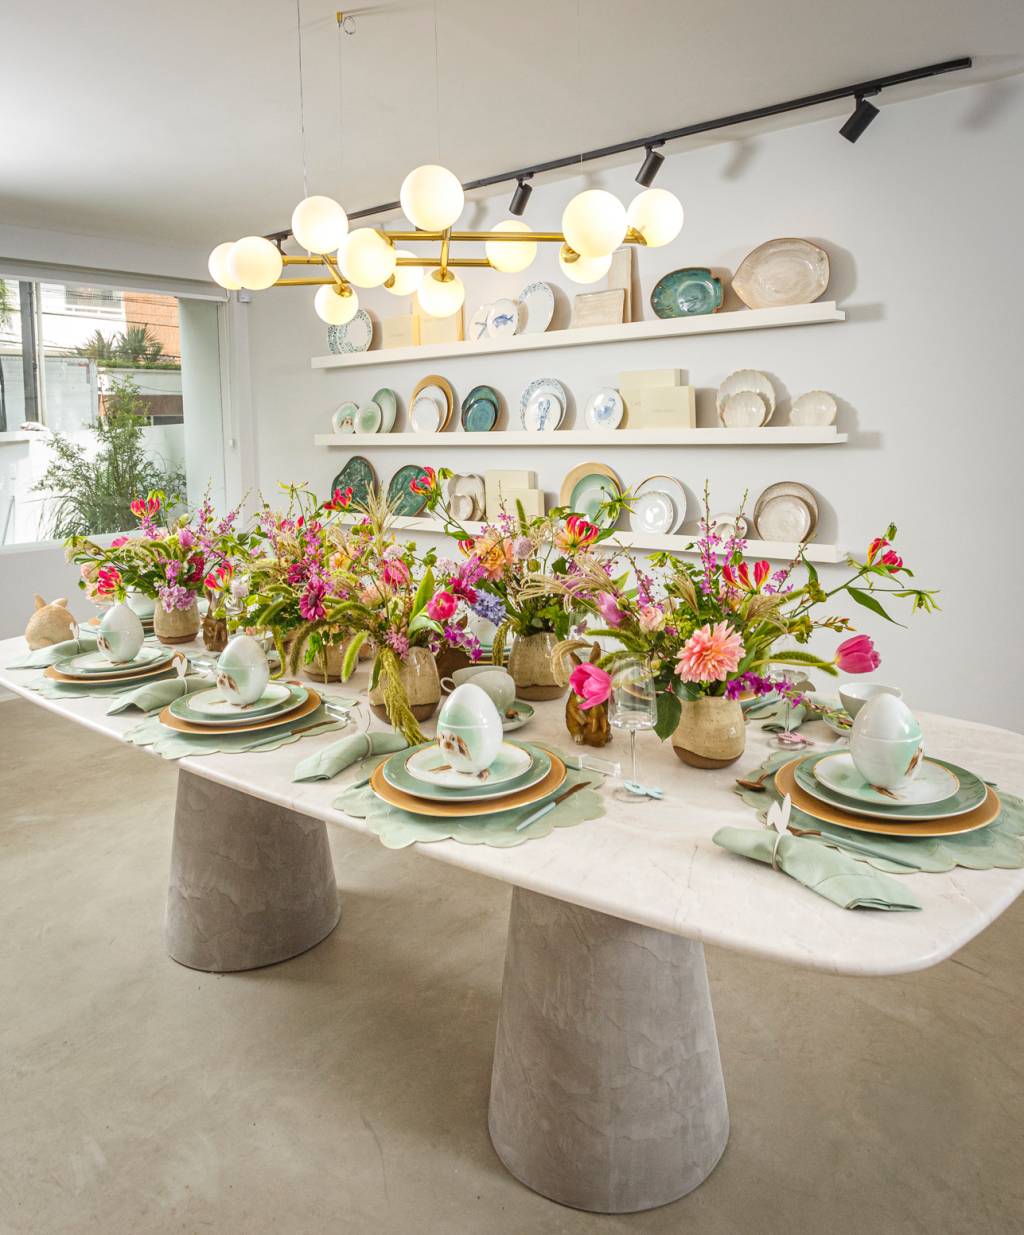 Showroom Casa Costa: foto exibe mesa branca repleta de flores rosas e pratos de porcelana. Ao fundo, prateleiras brancas com pratos expostos.